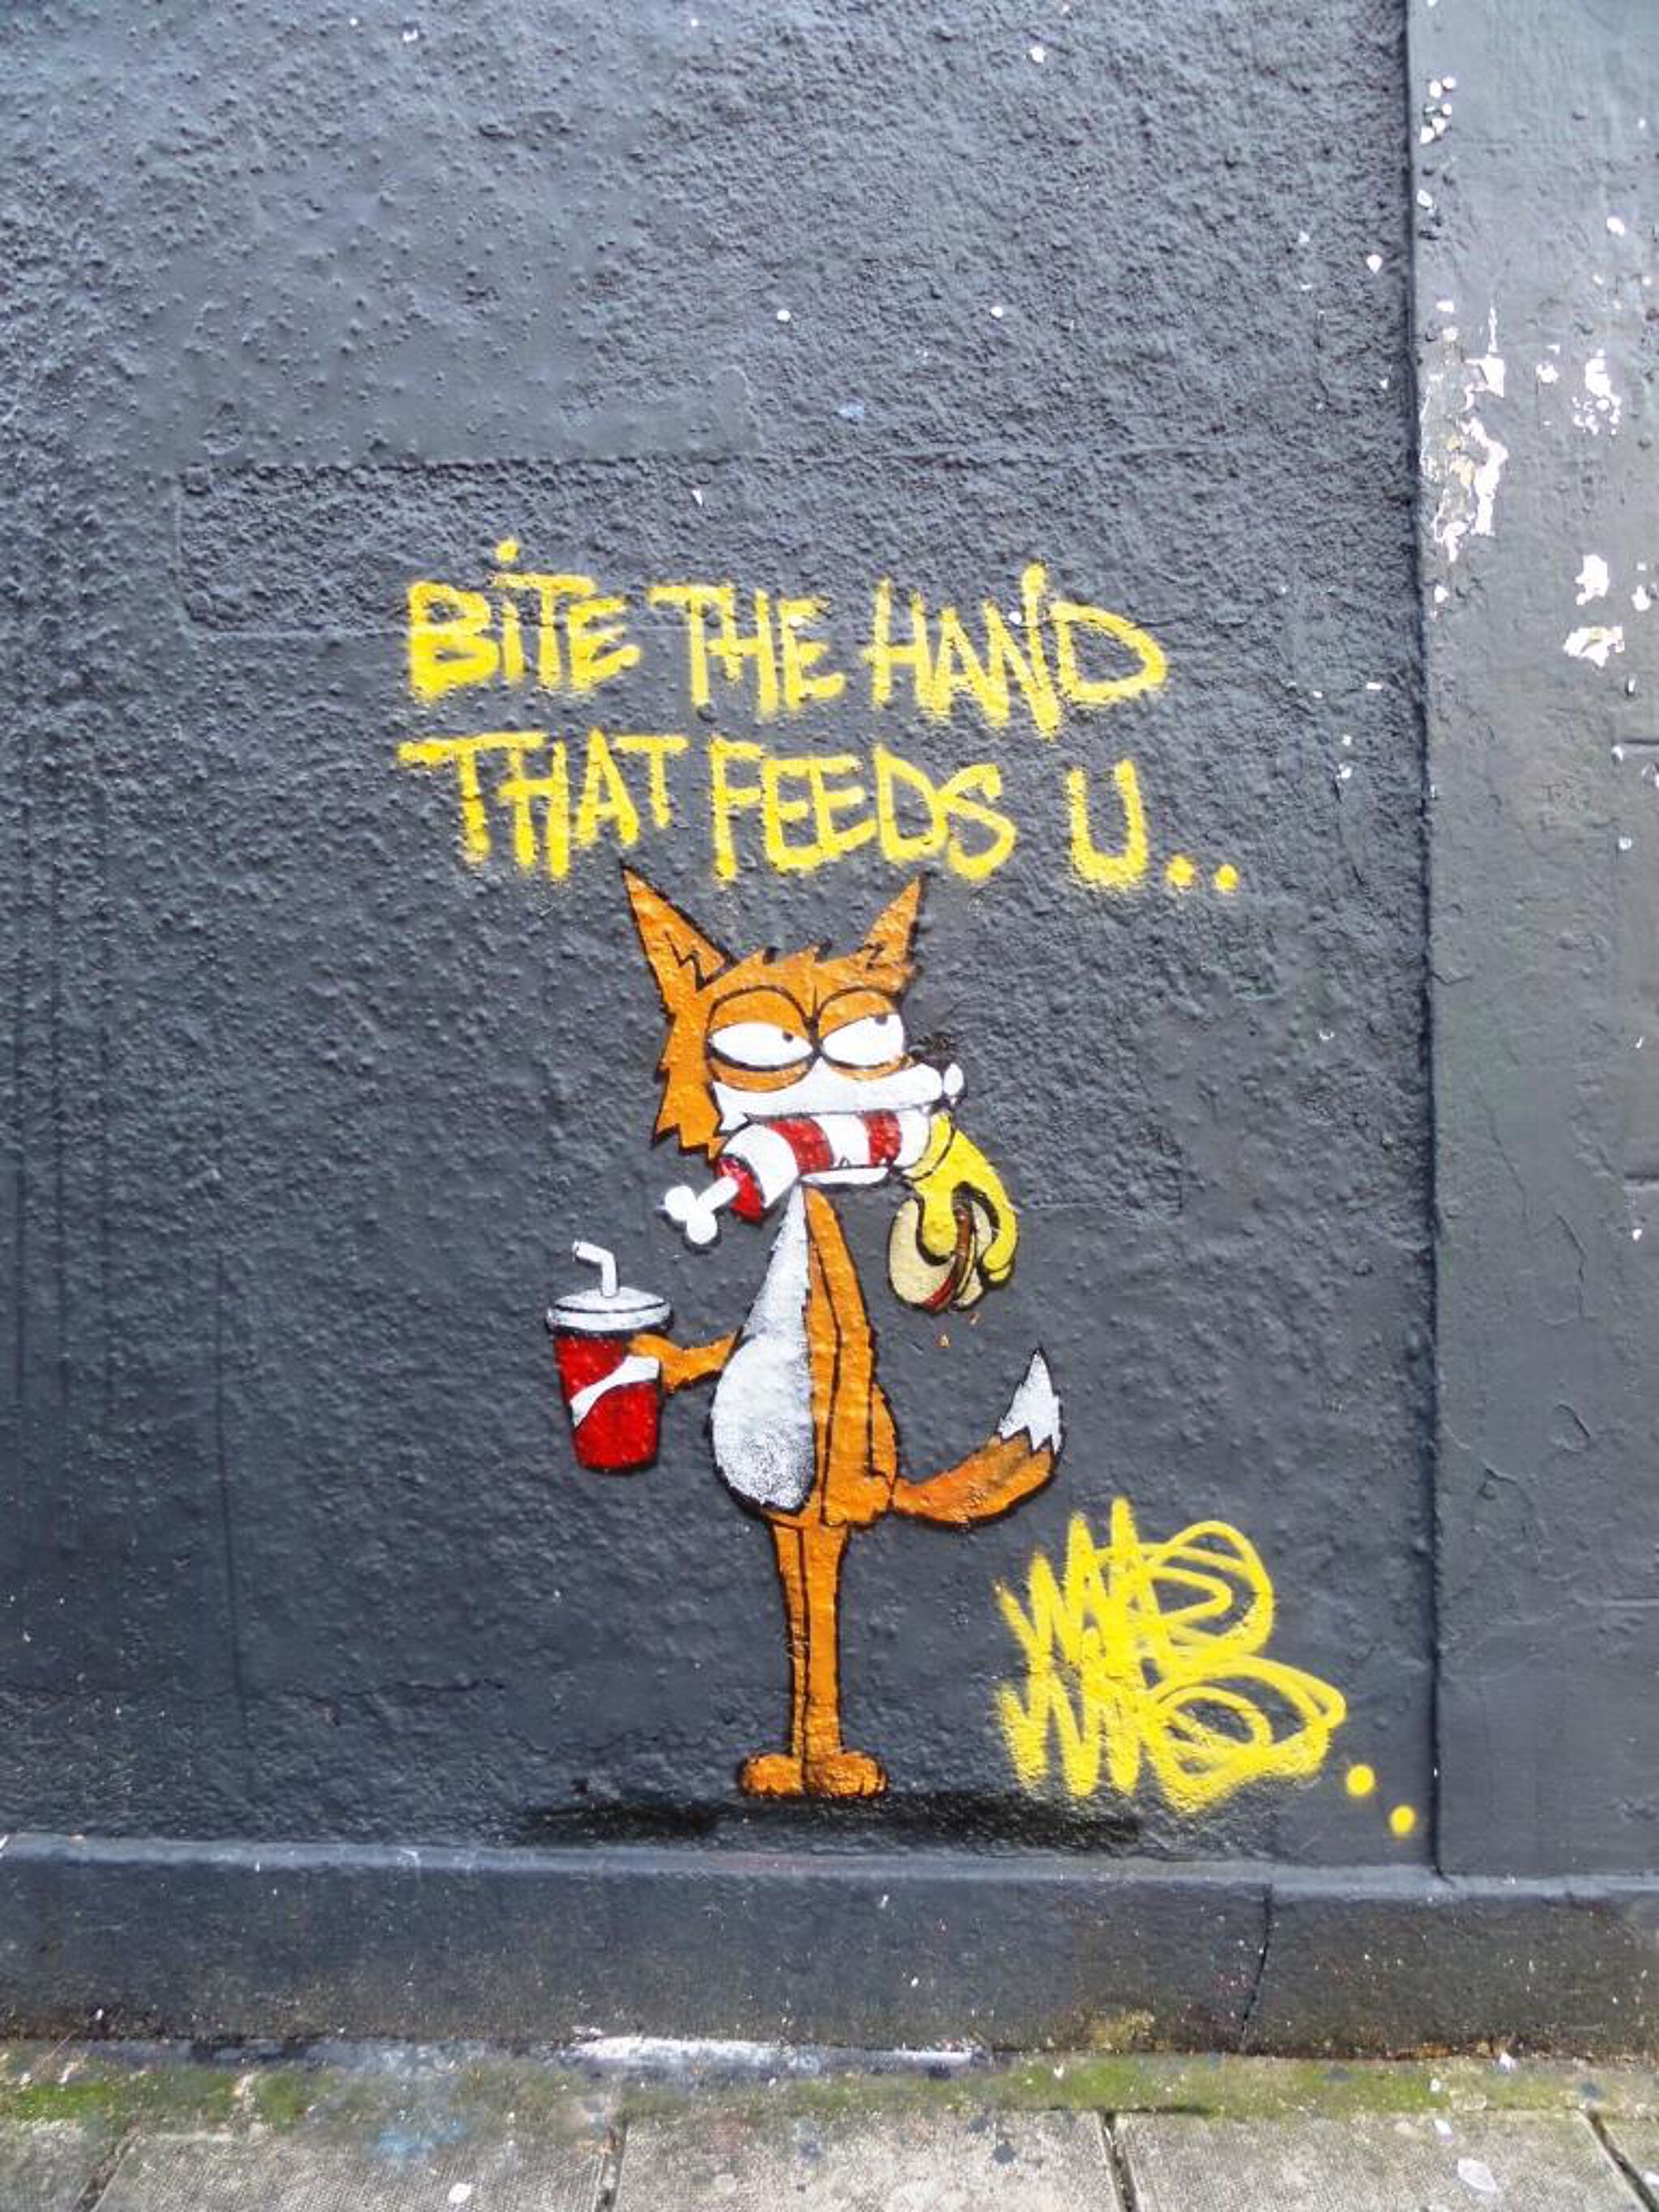 Mau Mau&mdash;Bite the hand that feeds U